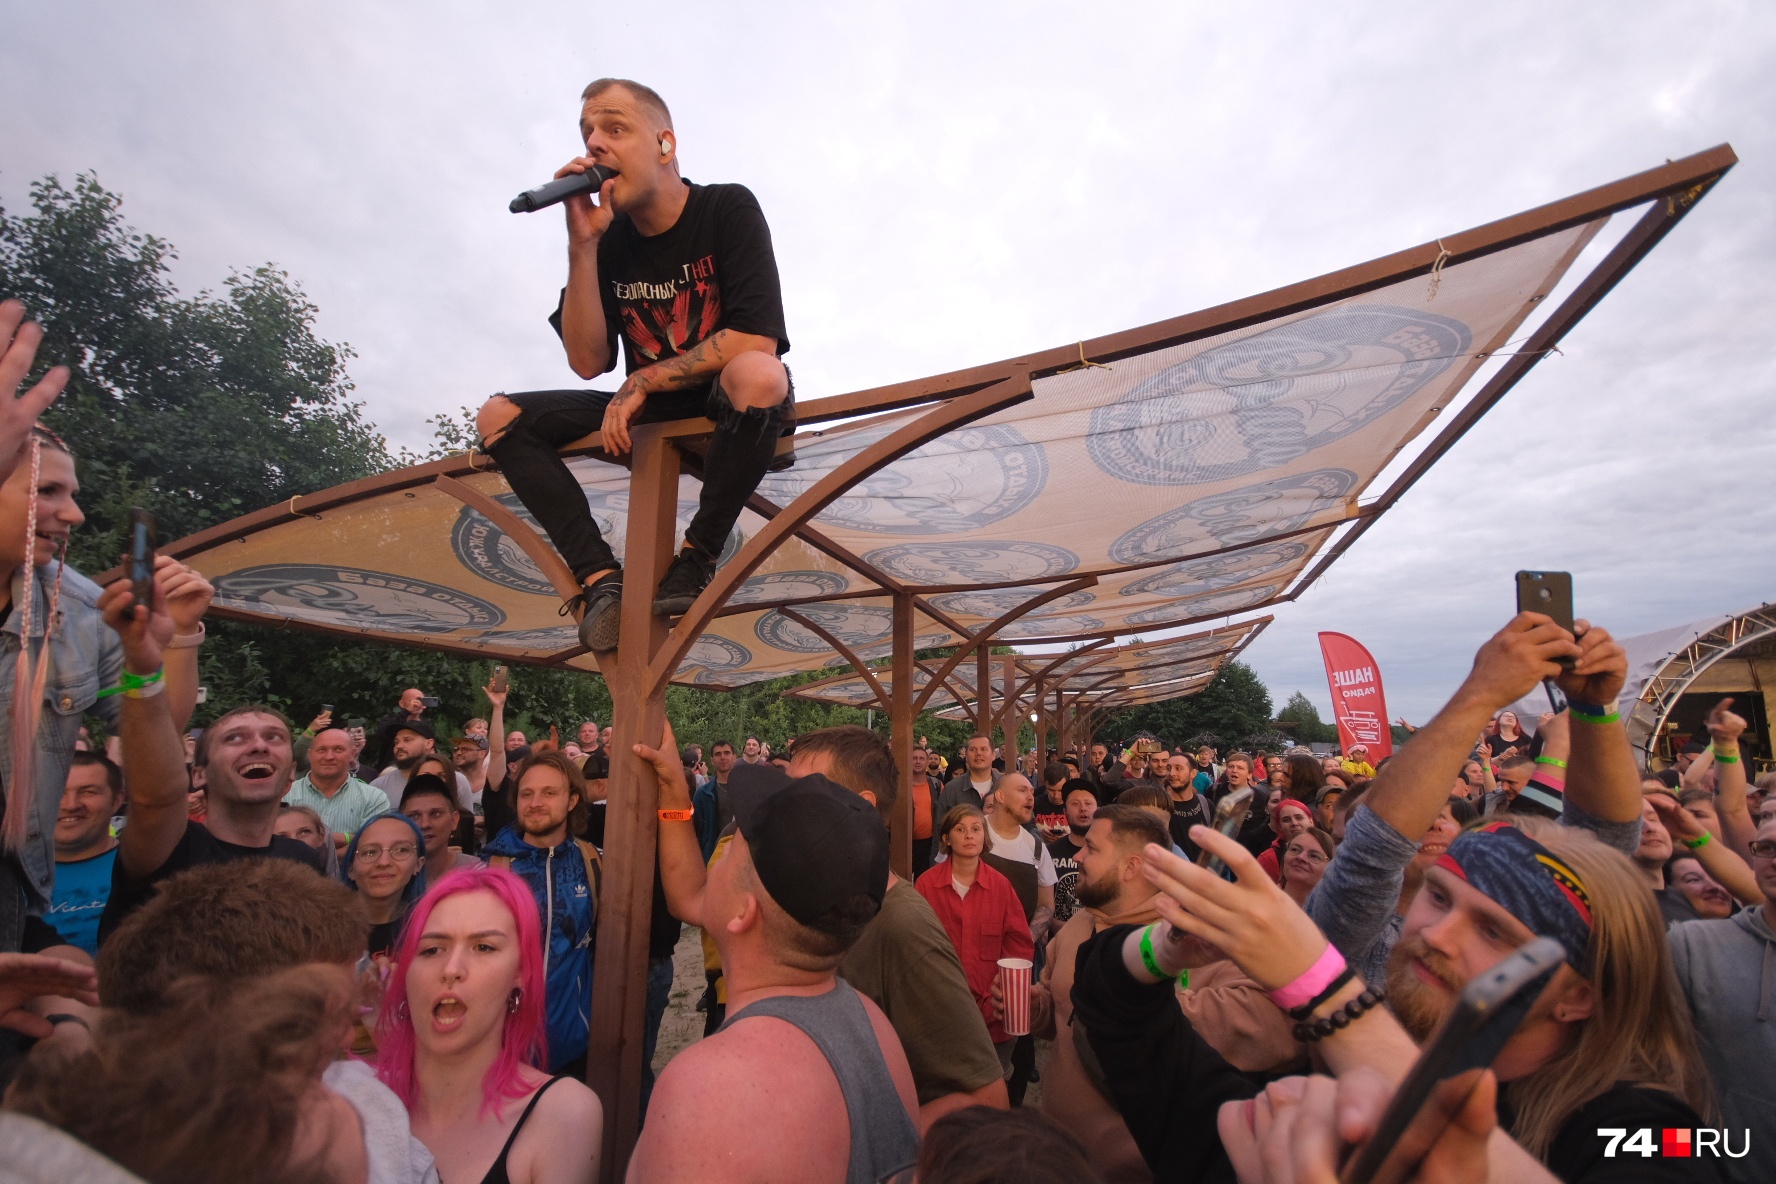 Солист Артем Хорев забрался на крышу навеса и оттуда спел, а потом прыгнул в толпу